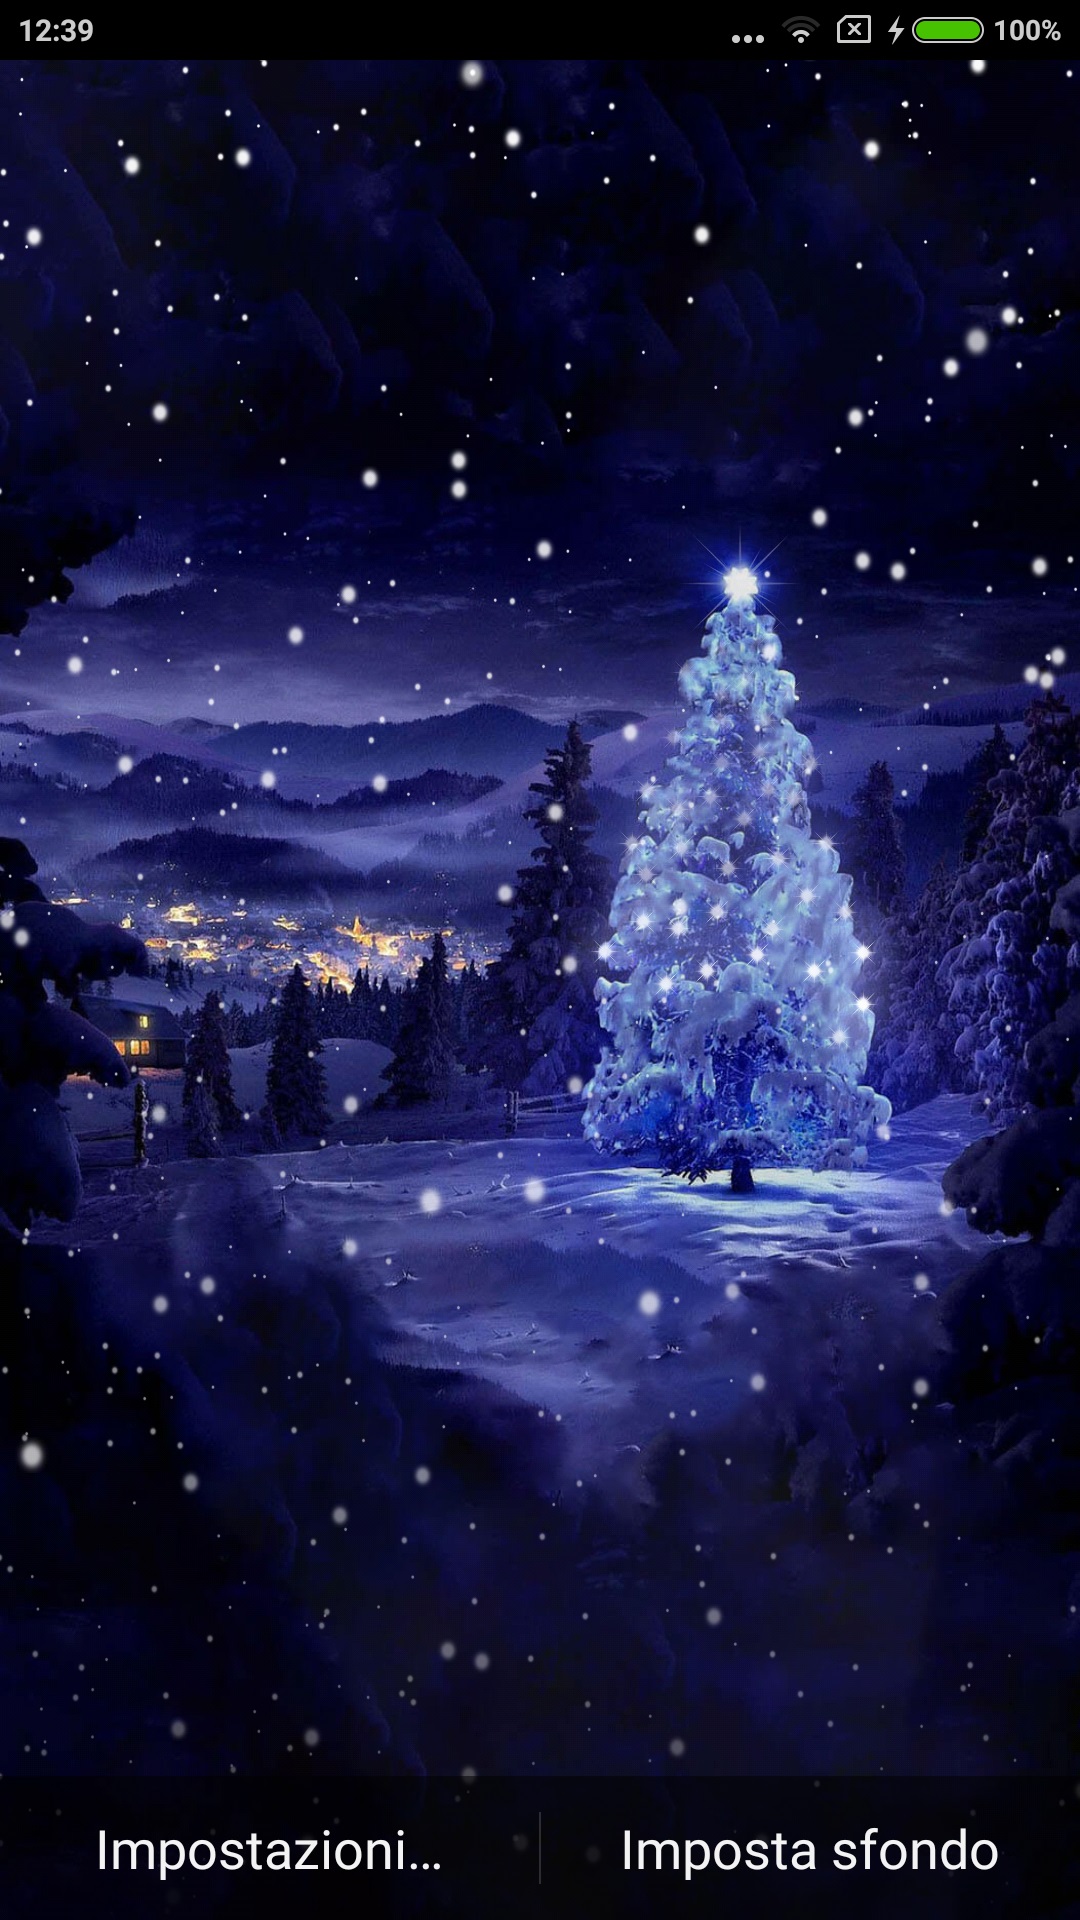 Sfondi Natalizi Paesaggi.Christmas Tree Offre Uno Sfondo Animato Personalizzabile Con L Albero Di Natale Innevato